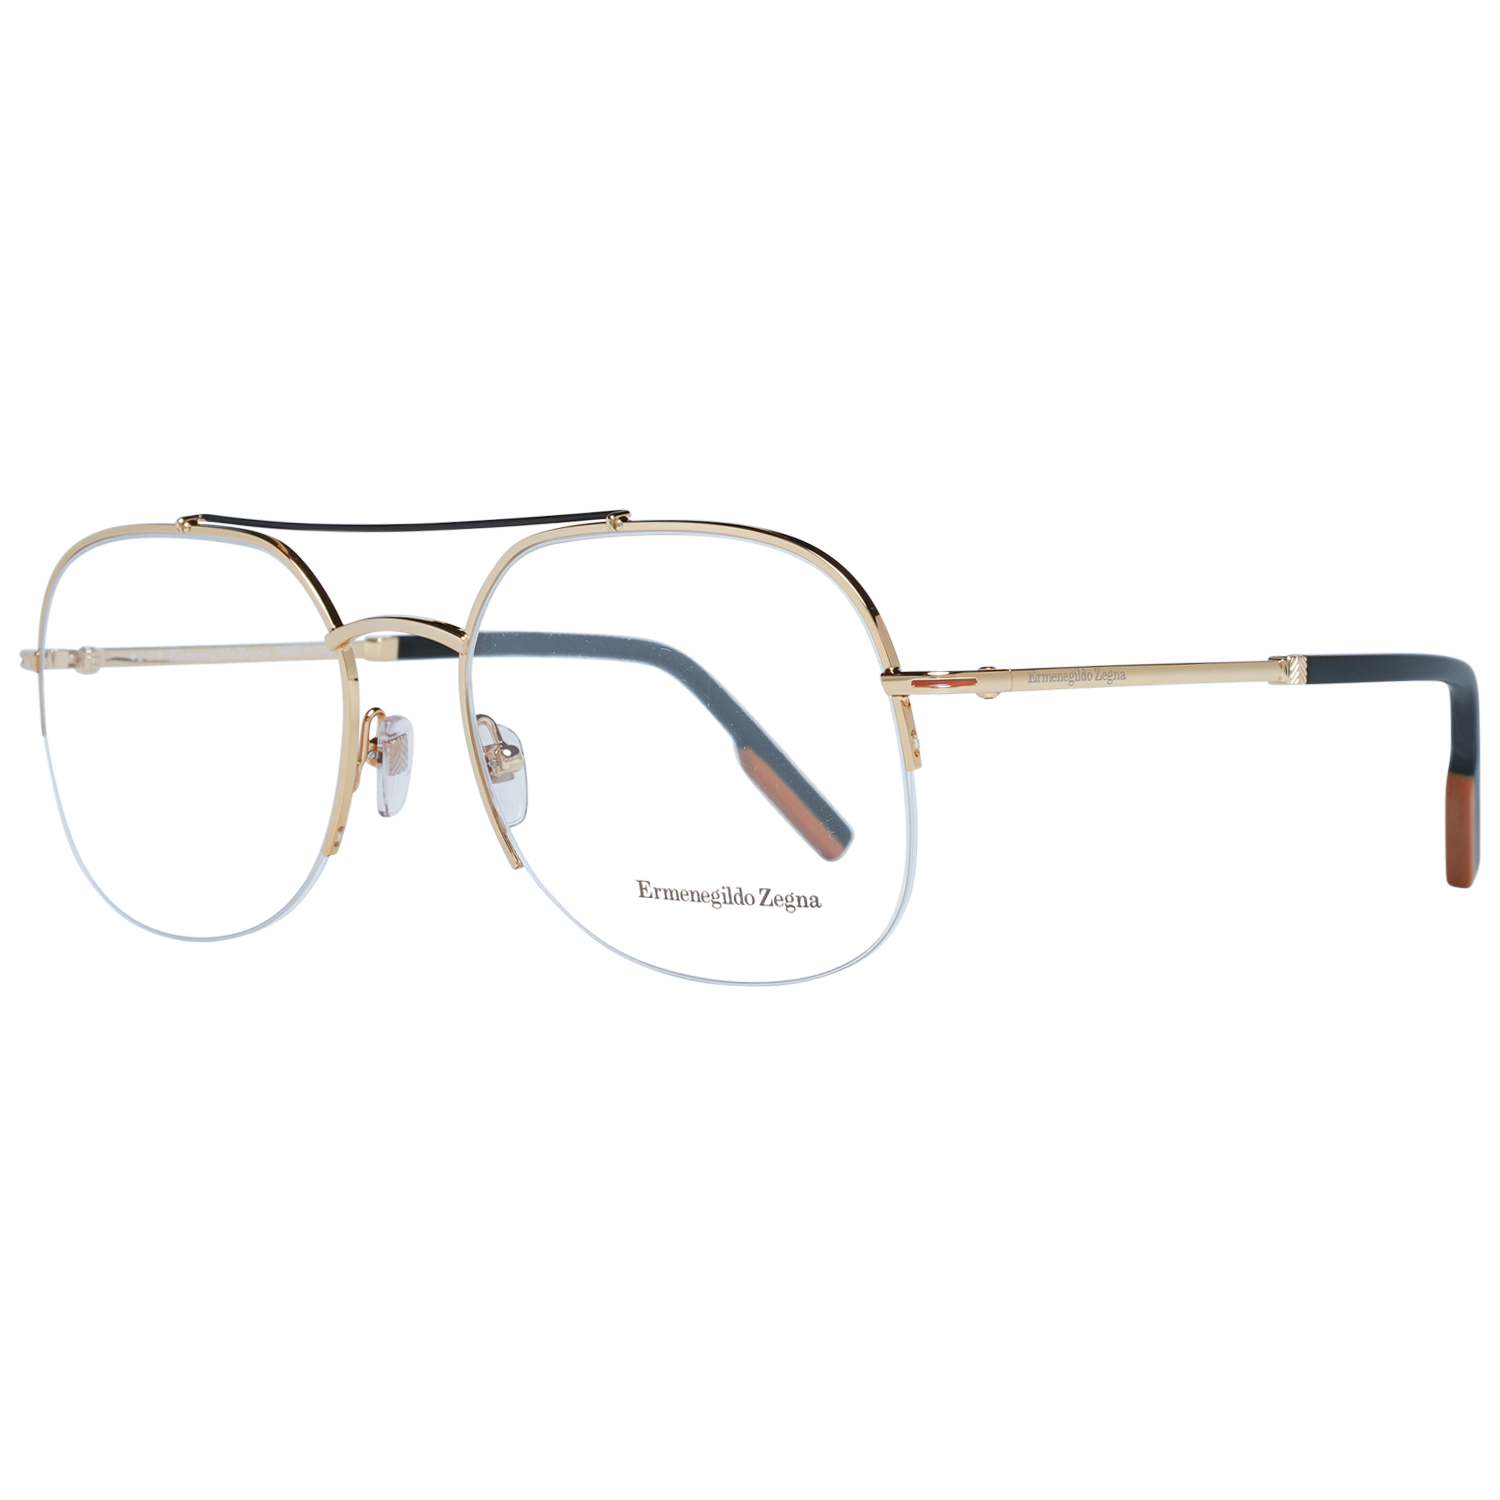 Ermenegildo Zegna Frames Ermenegildo Zegna Glasses Optical Frame EZ5184 030 58 Eyeglasses Eyewear UK USA Australia 